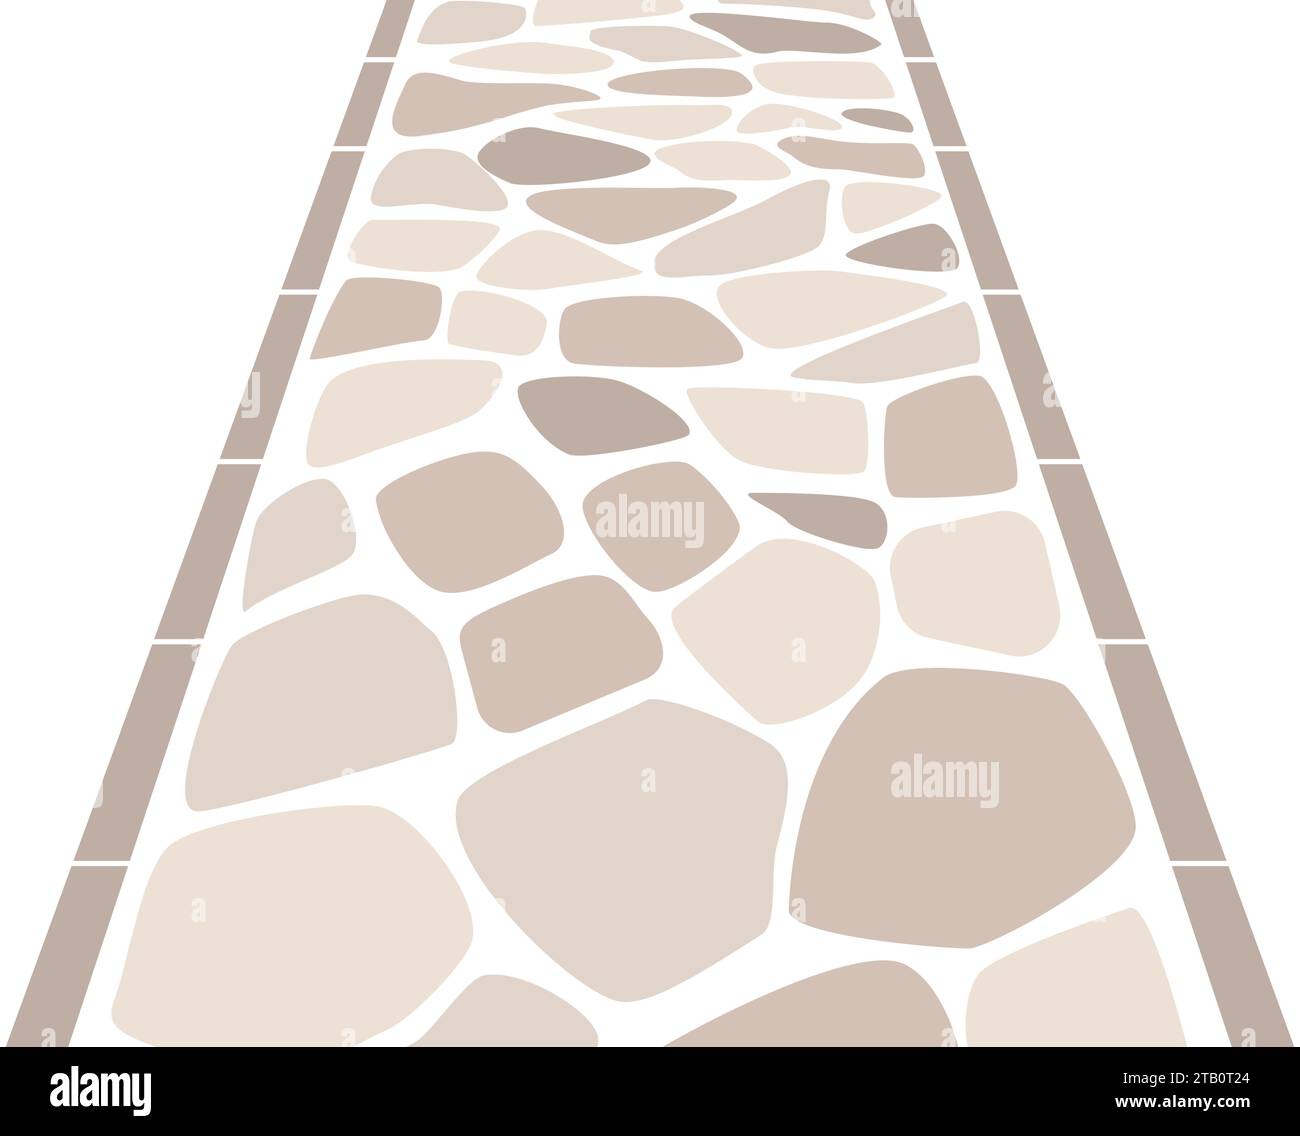 semplice strada acciottolata. Immagine di una strada in stile occidentale con pietre beige. Una strada prospettica che va dritta. Illustrazione Vettoriale